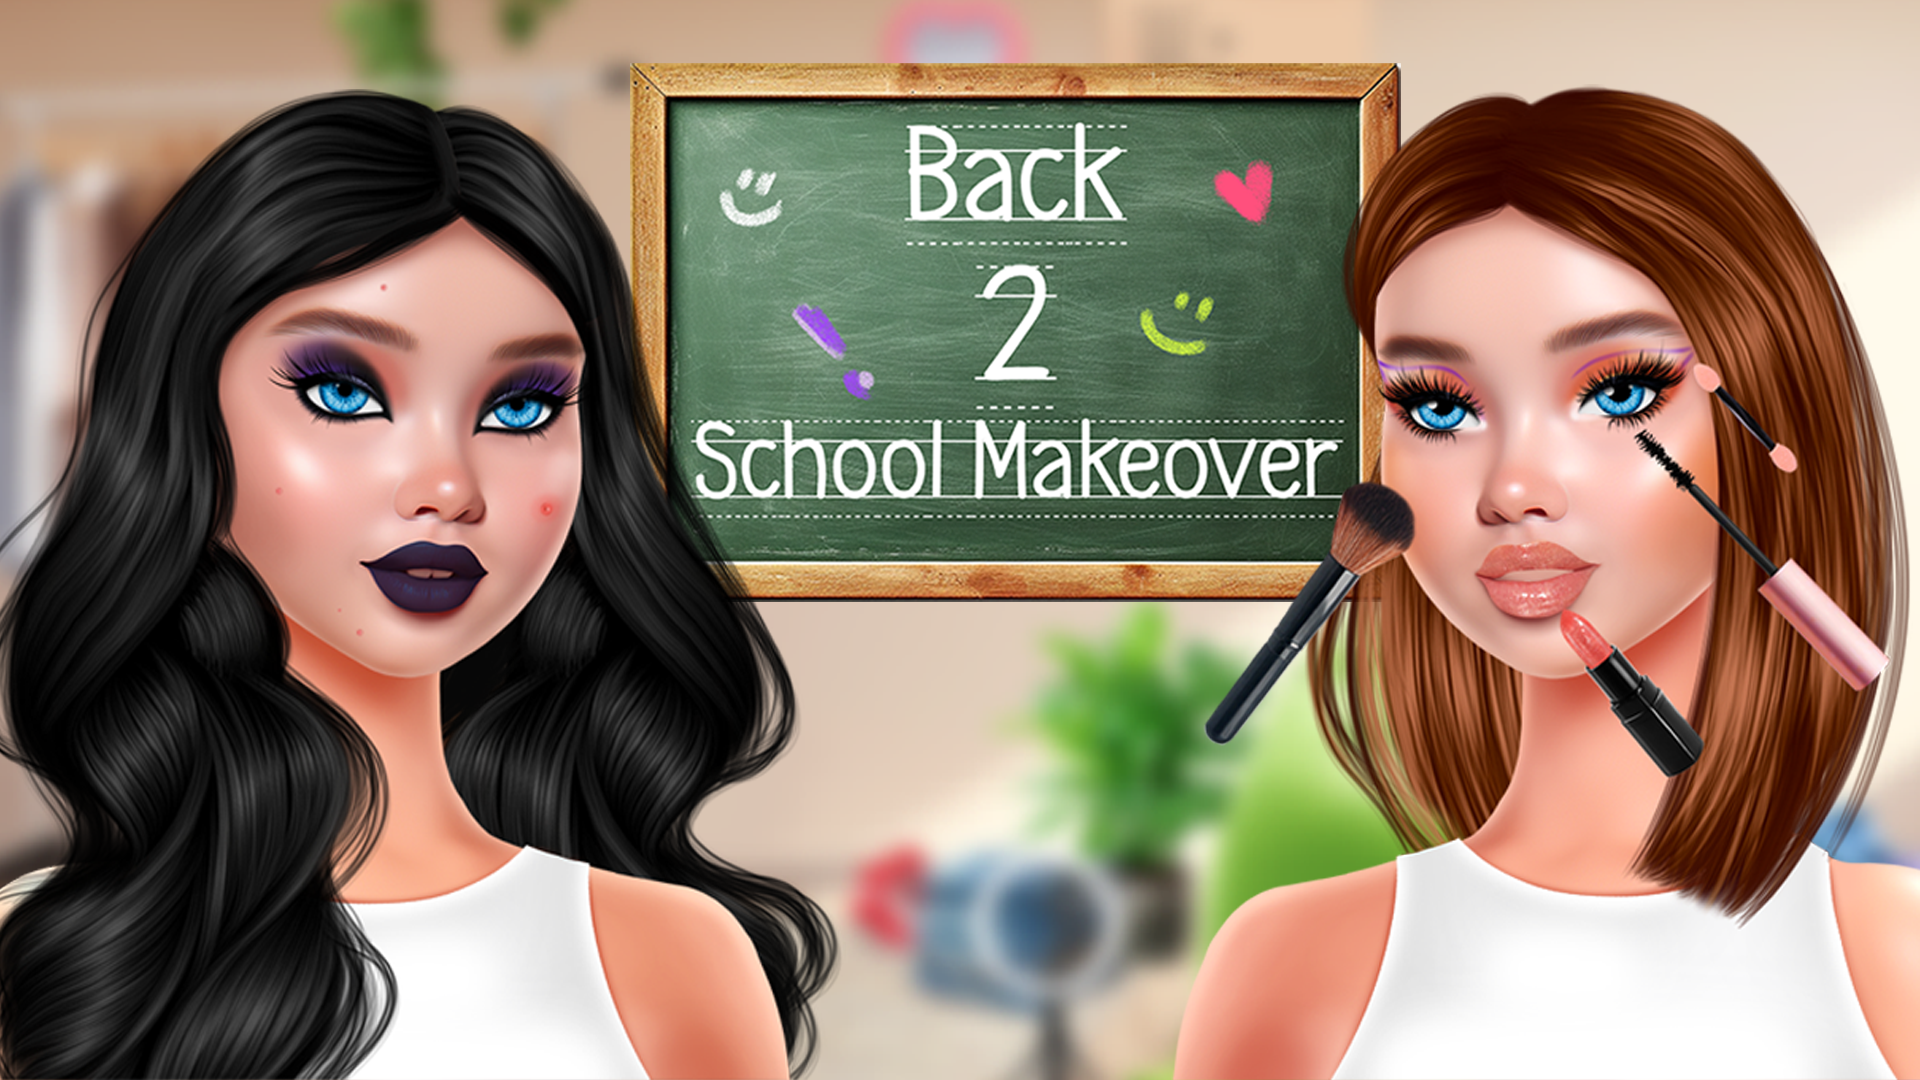 Back 2 School Makeover Game Image